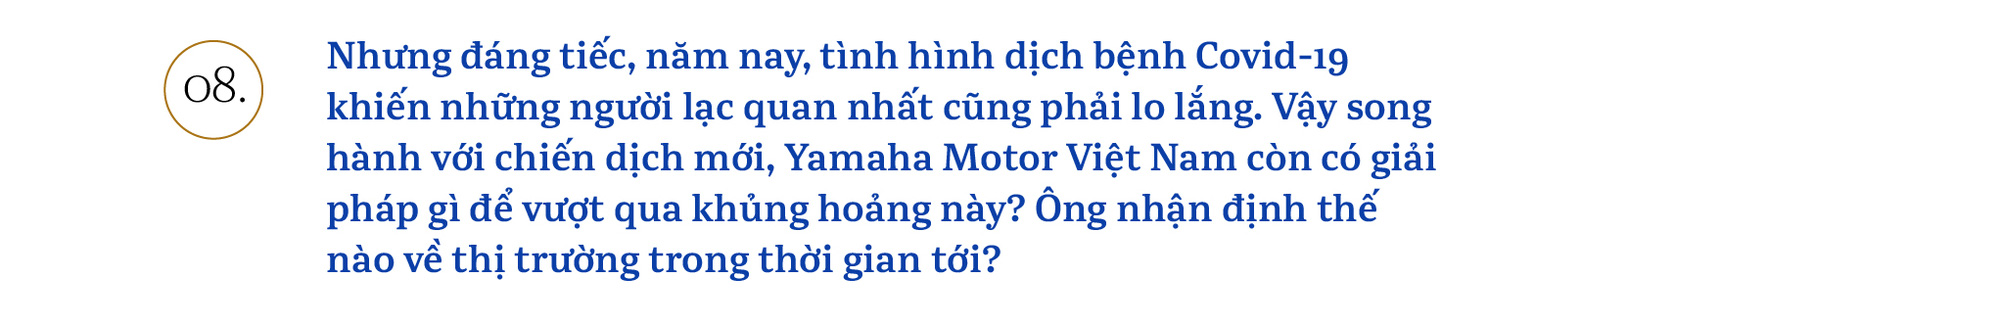 Chủ tịch Yamaha Việt Nam: ‘Chúng tôi sẽ khơi dậy khách hàng trẻ tìm được bản ngã của chính mình’ - Ảnh 15.